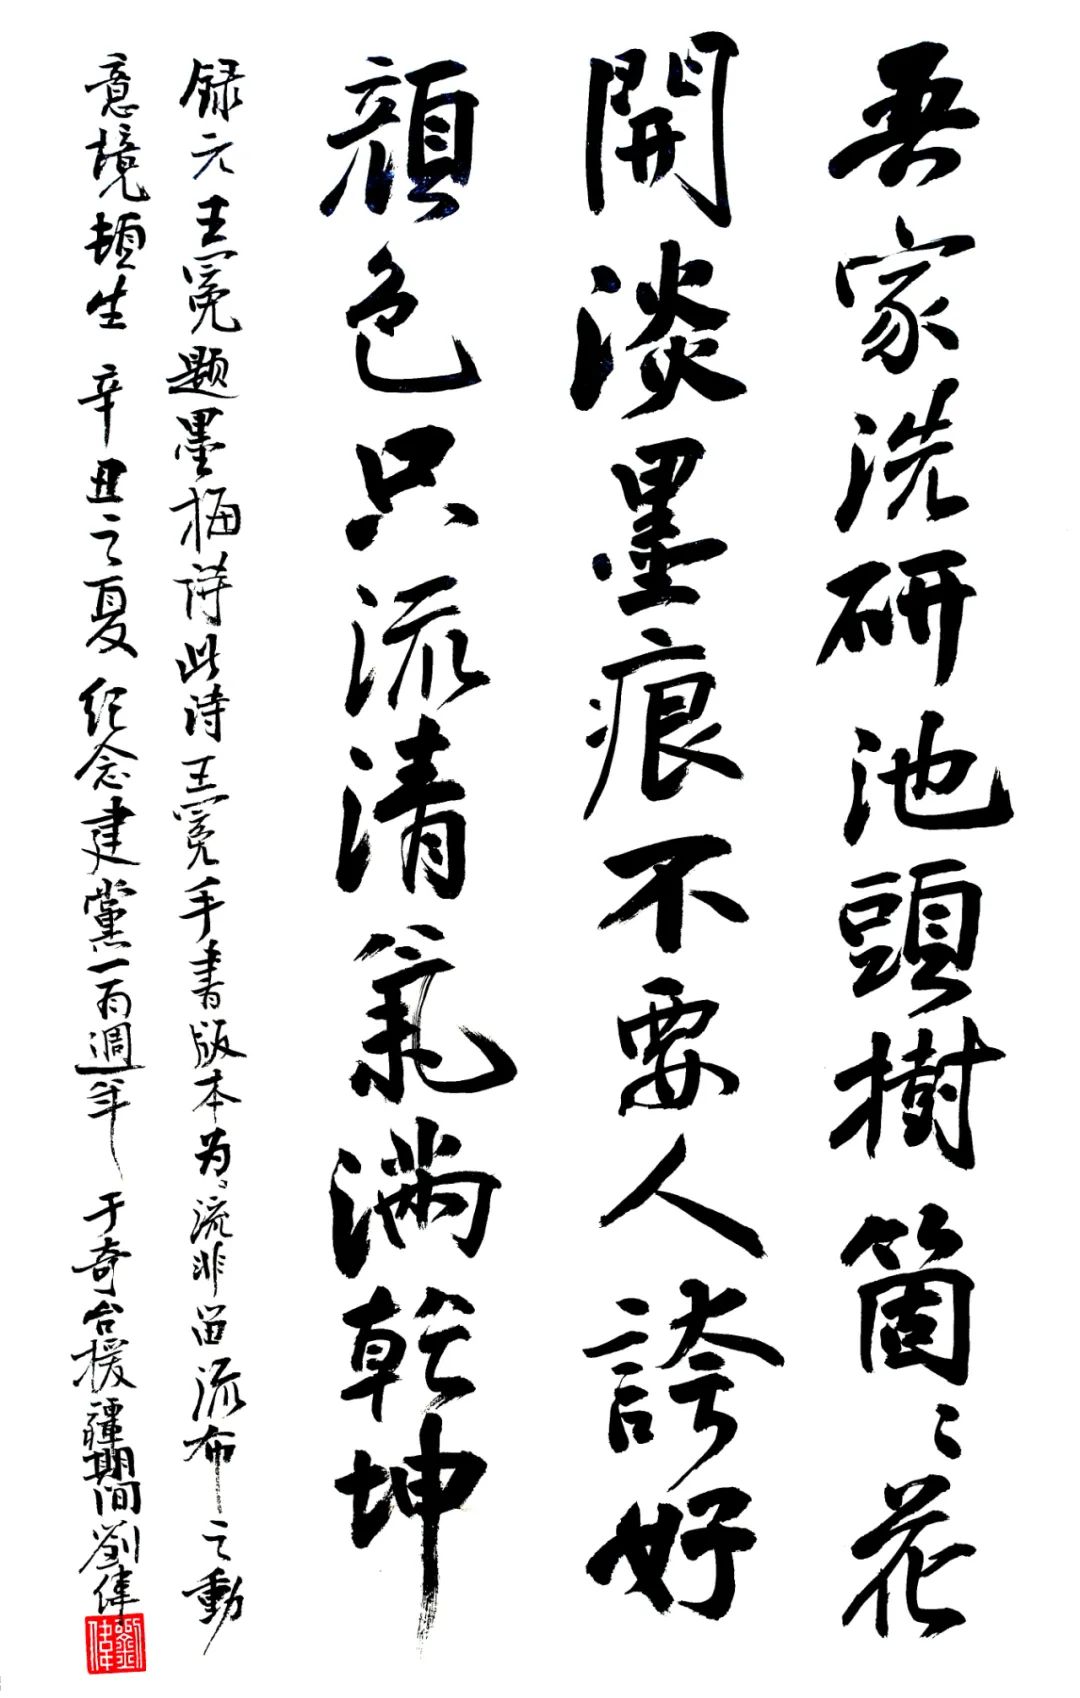 九州上下歌盛世 万点丹青绘宏图——福州民盟庆祝中国共产党成立100周年书画展